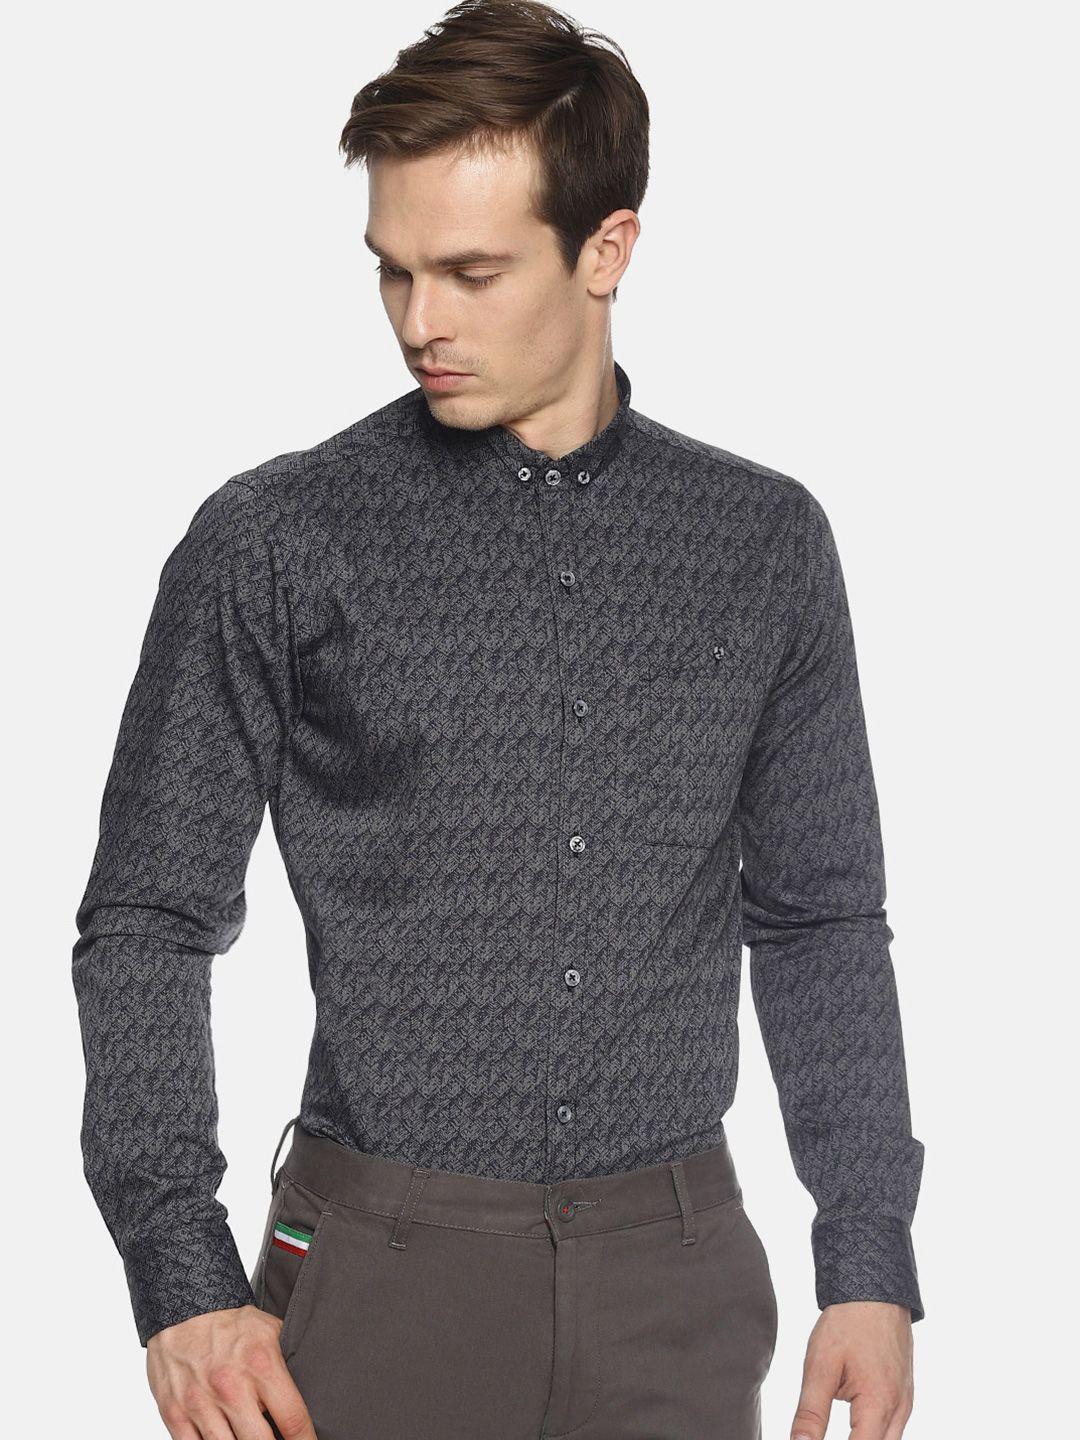 couper & coll men grey premium slim fit printed casual shirt